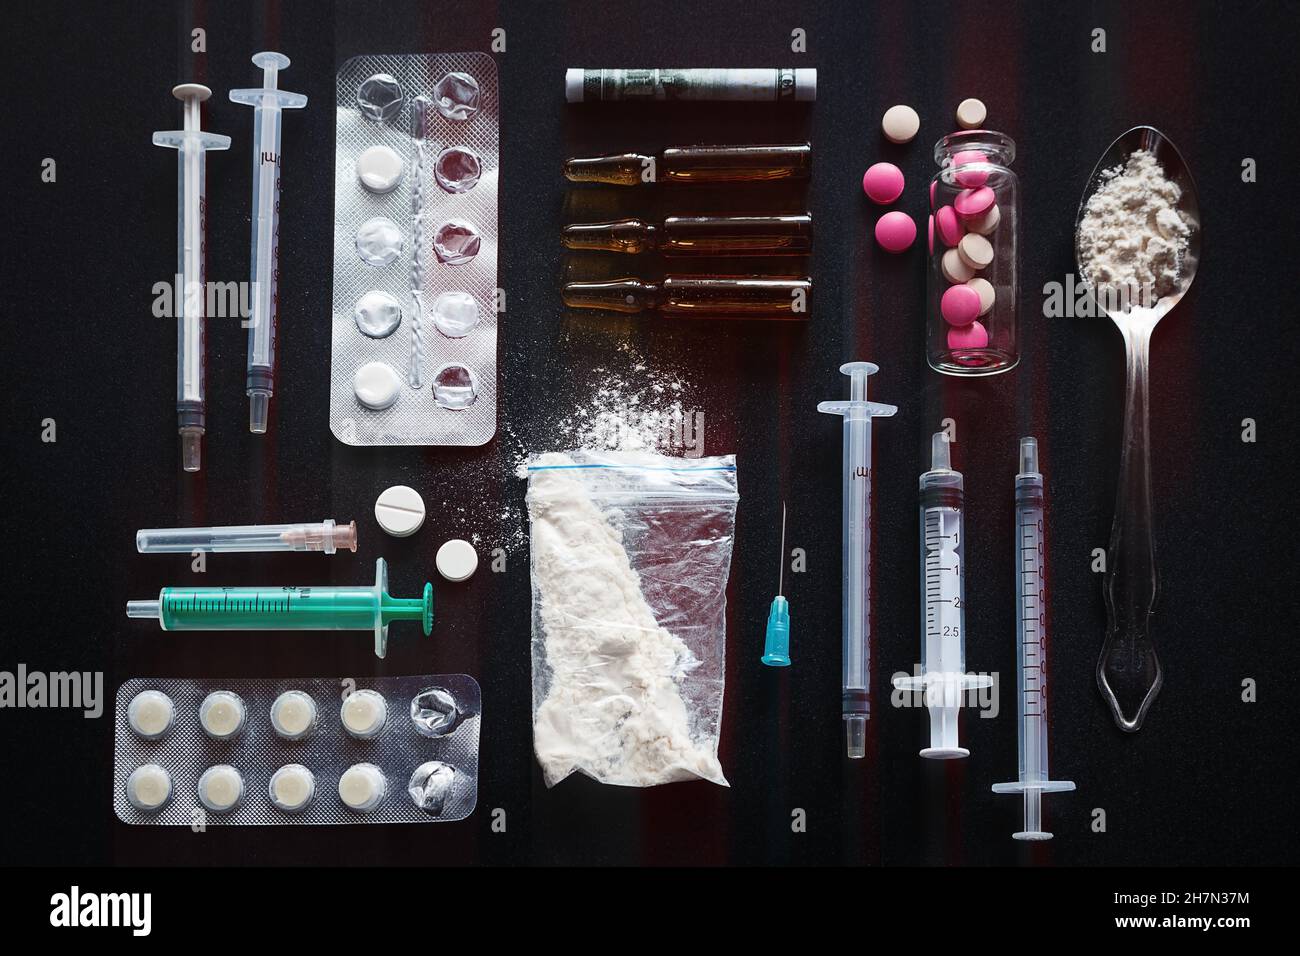 syringes, drugs on black background addiction concept Stock Photo